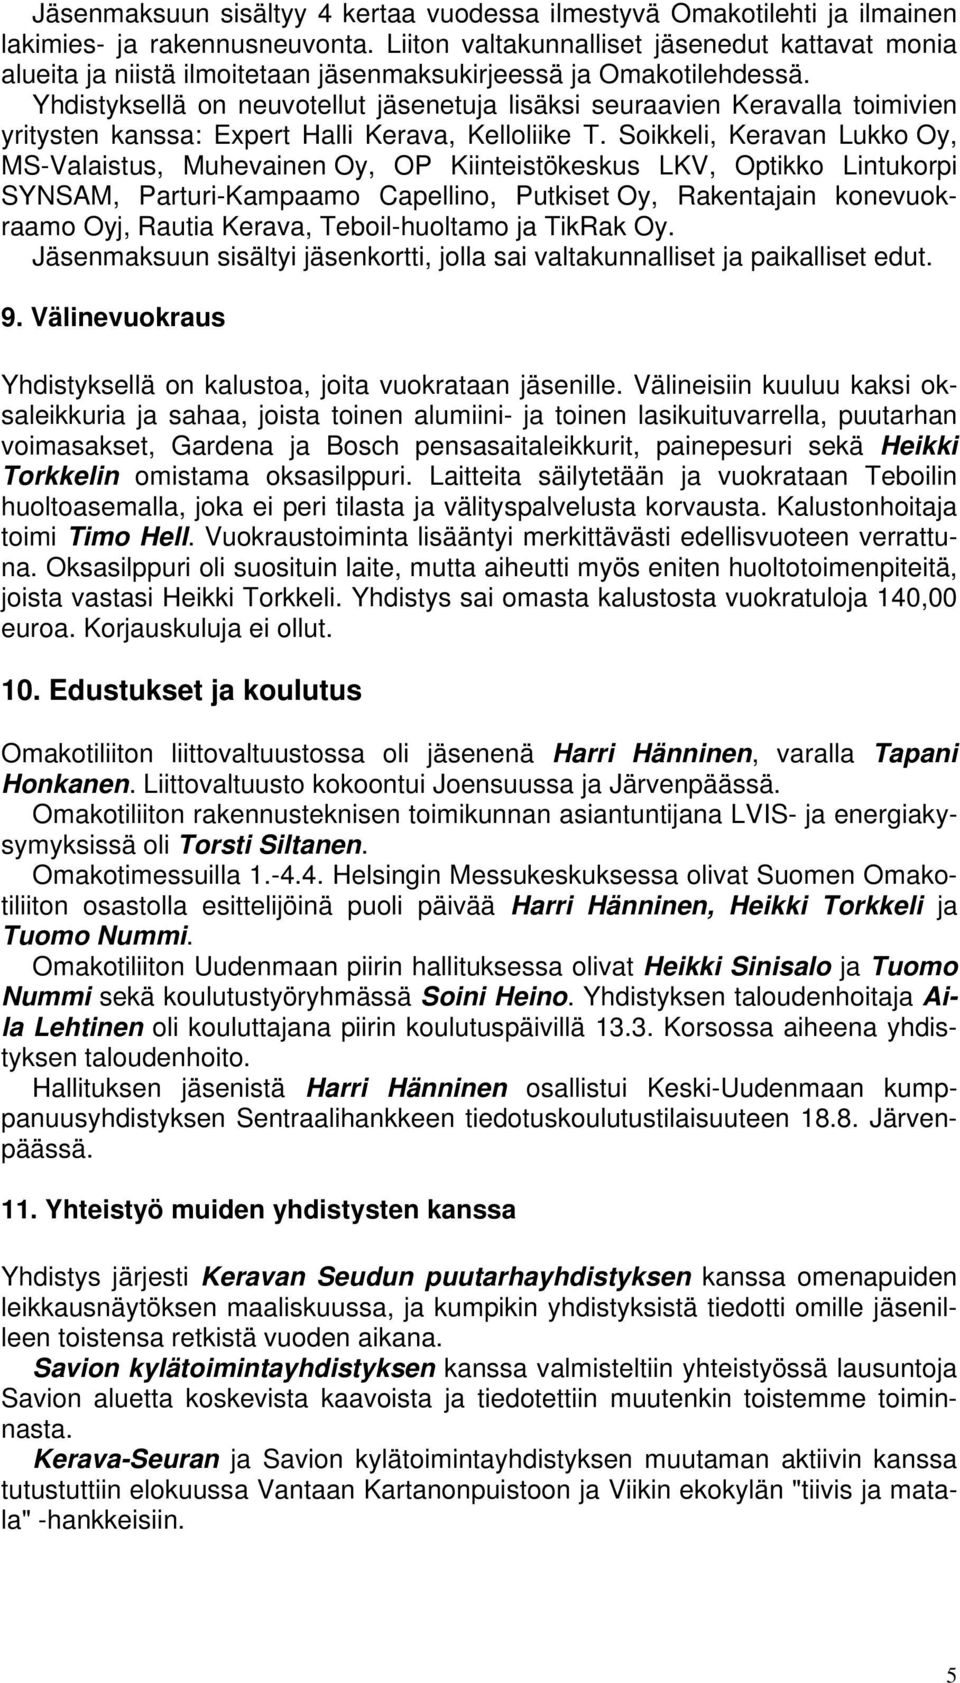 Yhdistyksellä on neuvotellut jäsenetuja lisäksi seuraavien Keravalla toimivien yritysten kanssa: Expert Halli Kerava, Kelloliike T.